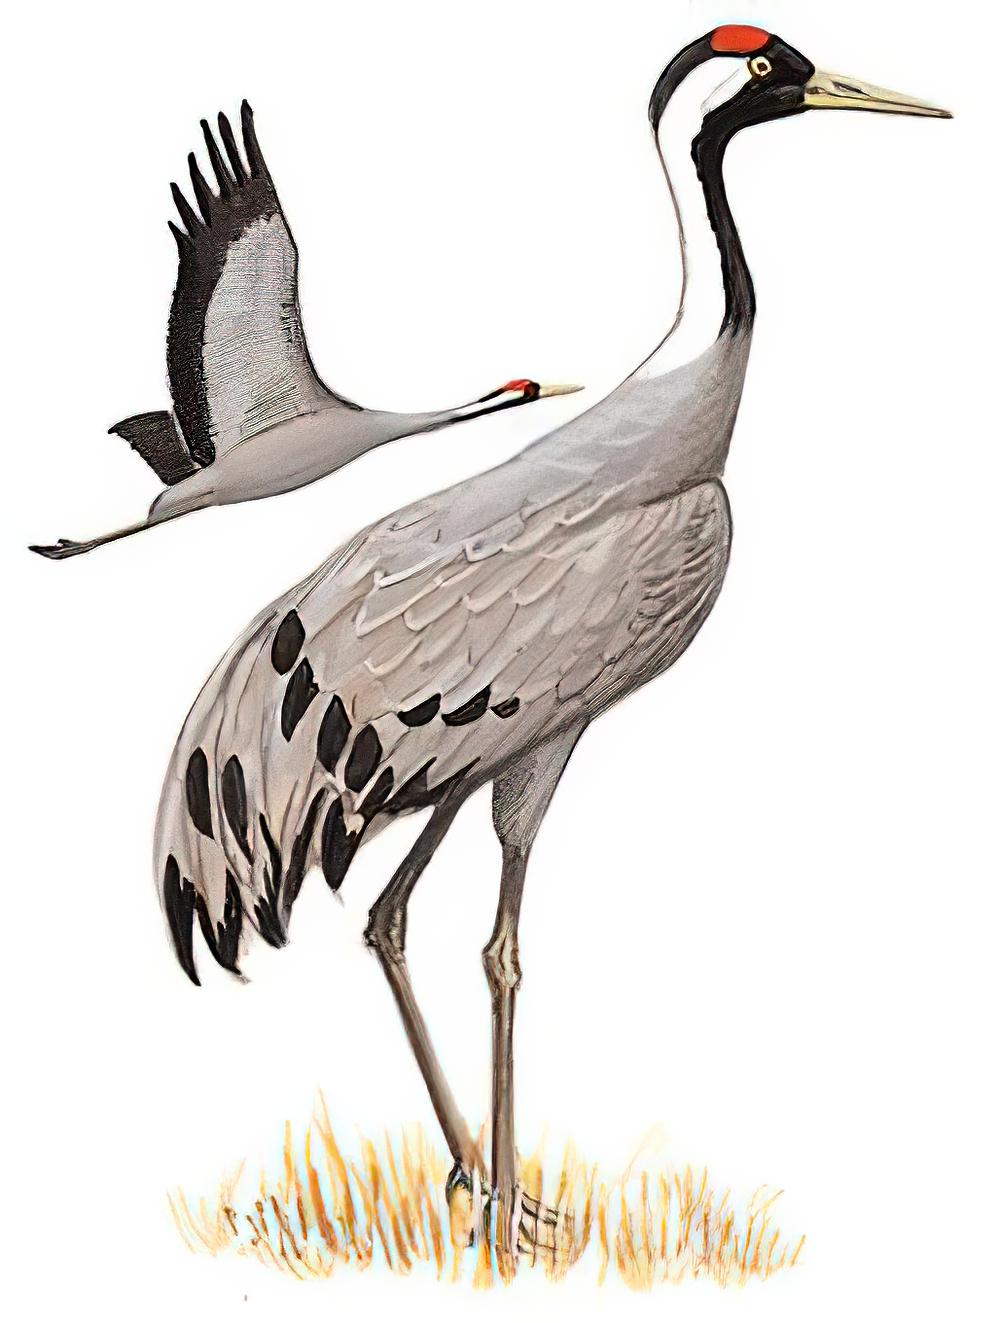 灰鹤 / Common Crane / Grus grus